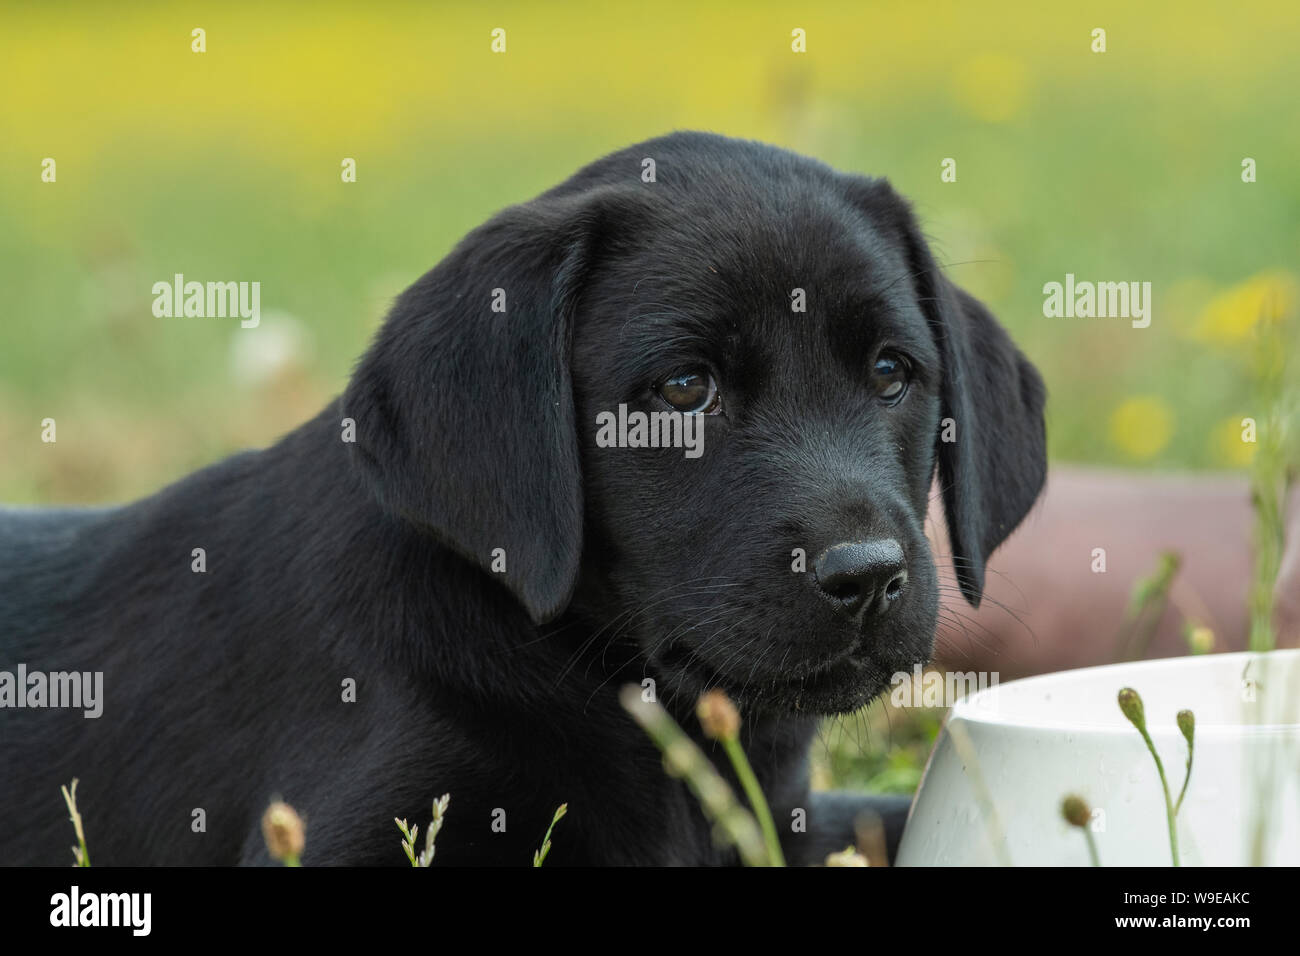 cute portrait of an 8 week old black labrador puppy W9EAKC